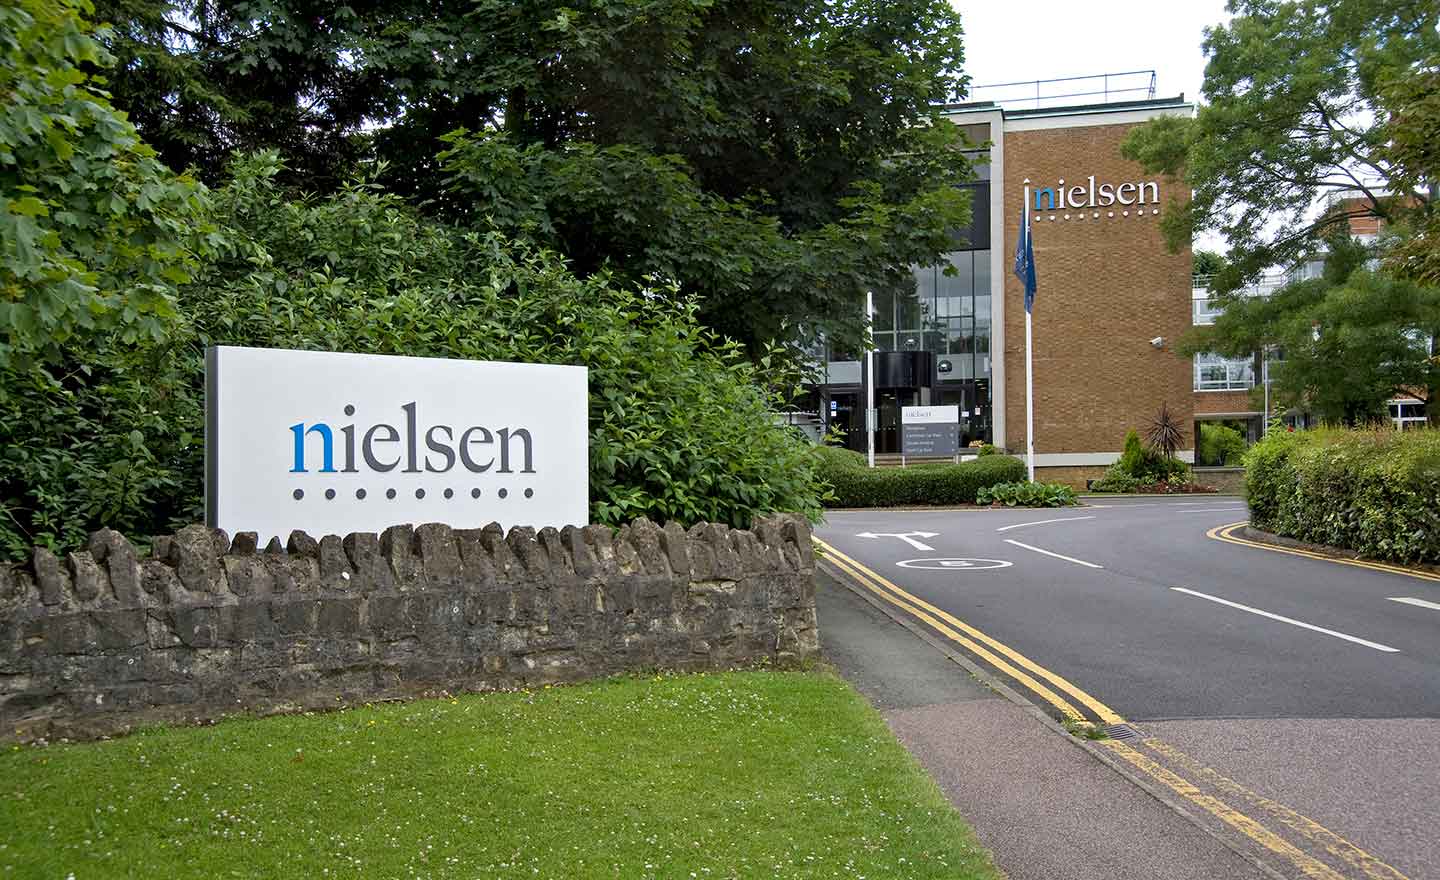 Nielsen Campus Exterior Signage